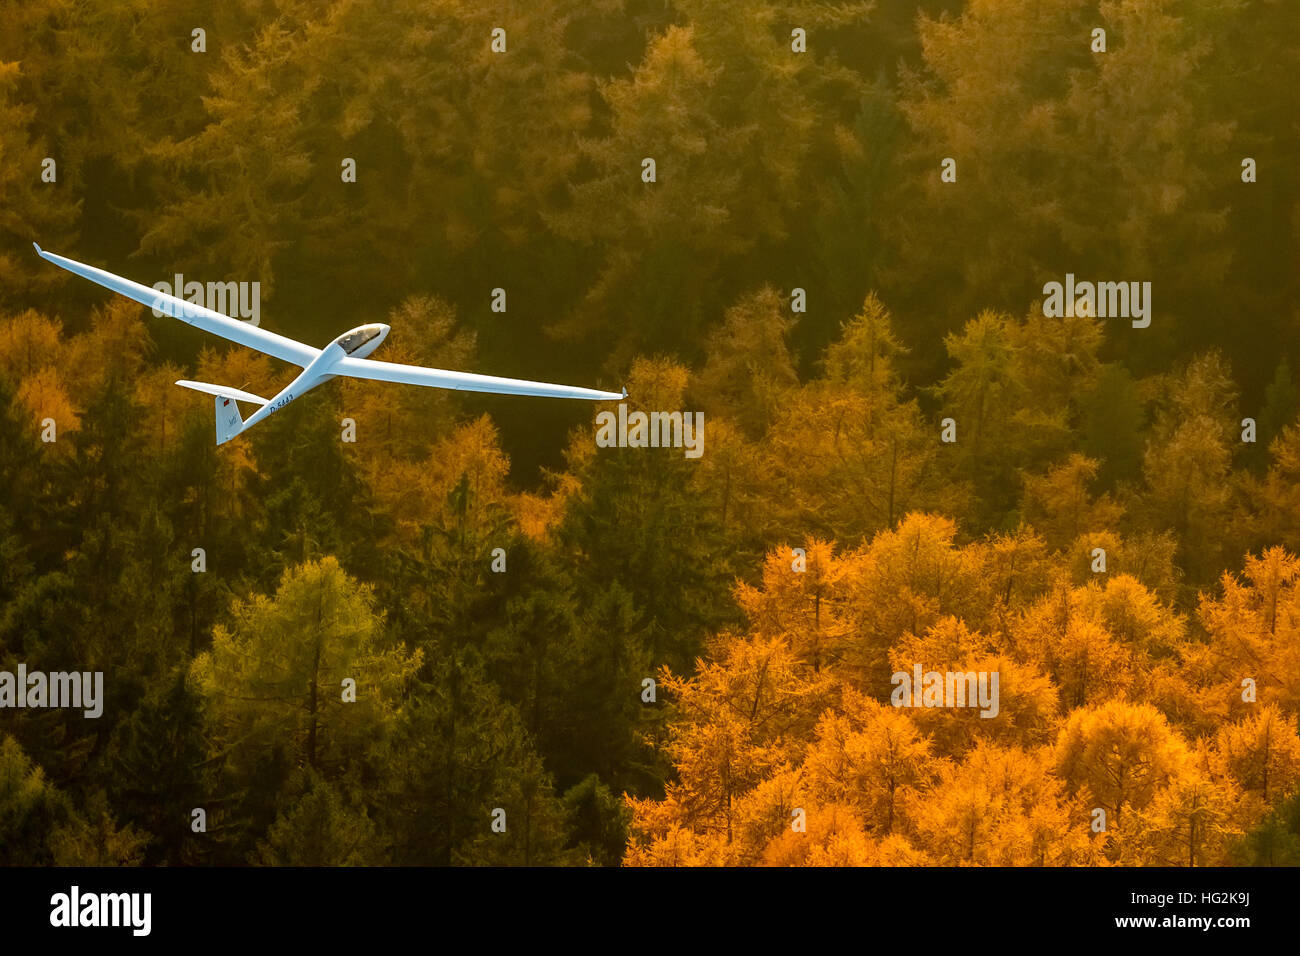 Vista aérea, Duo Discus D-5443 de la LSC Oeventrop e.V. sobre los bosques otoñales de Oeventrop, Foto de stock